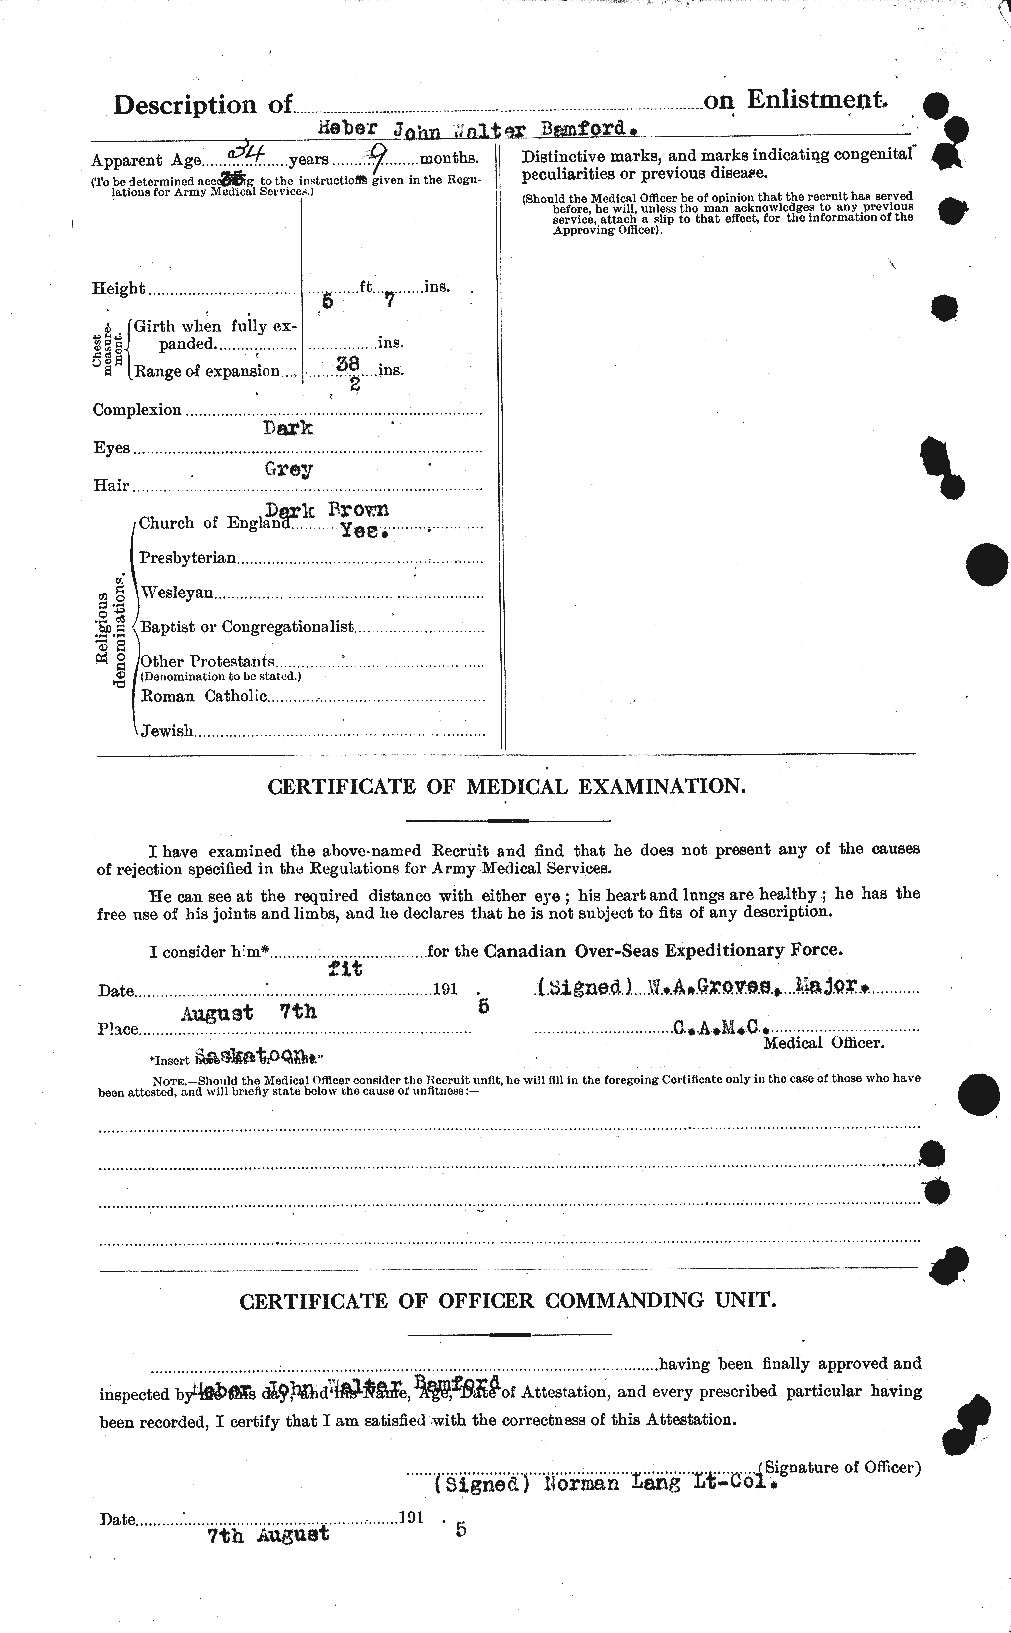 Dossiers du Personnel de la Première Guerre mondiale - CEC 219476b